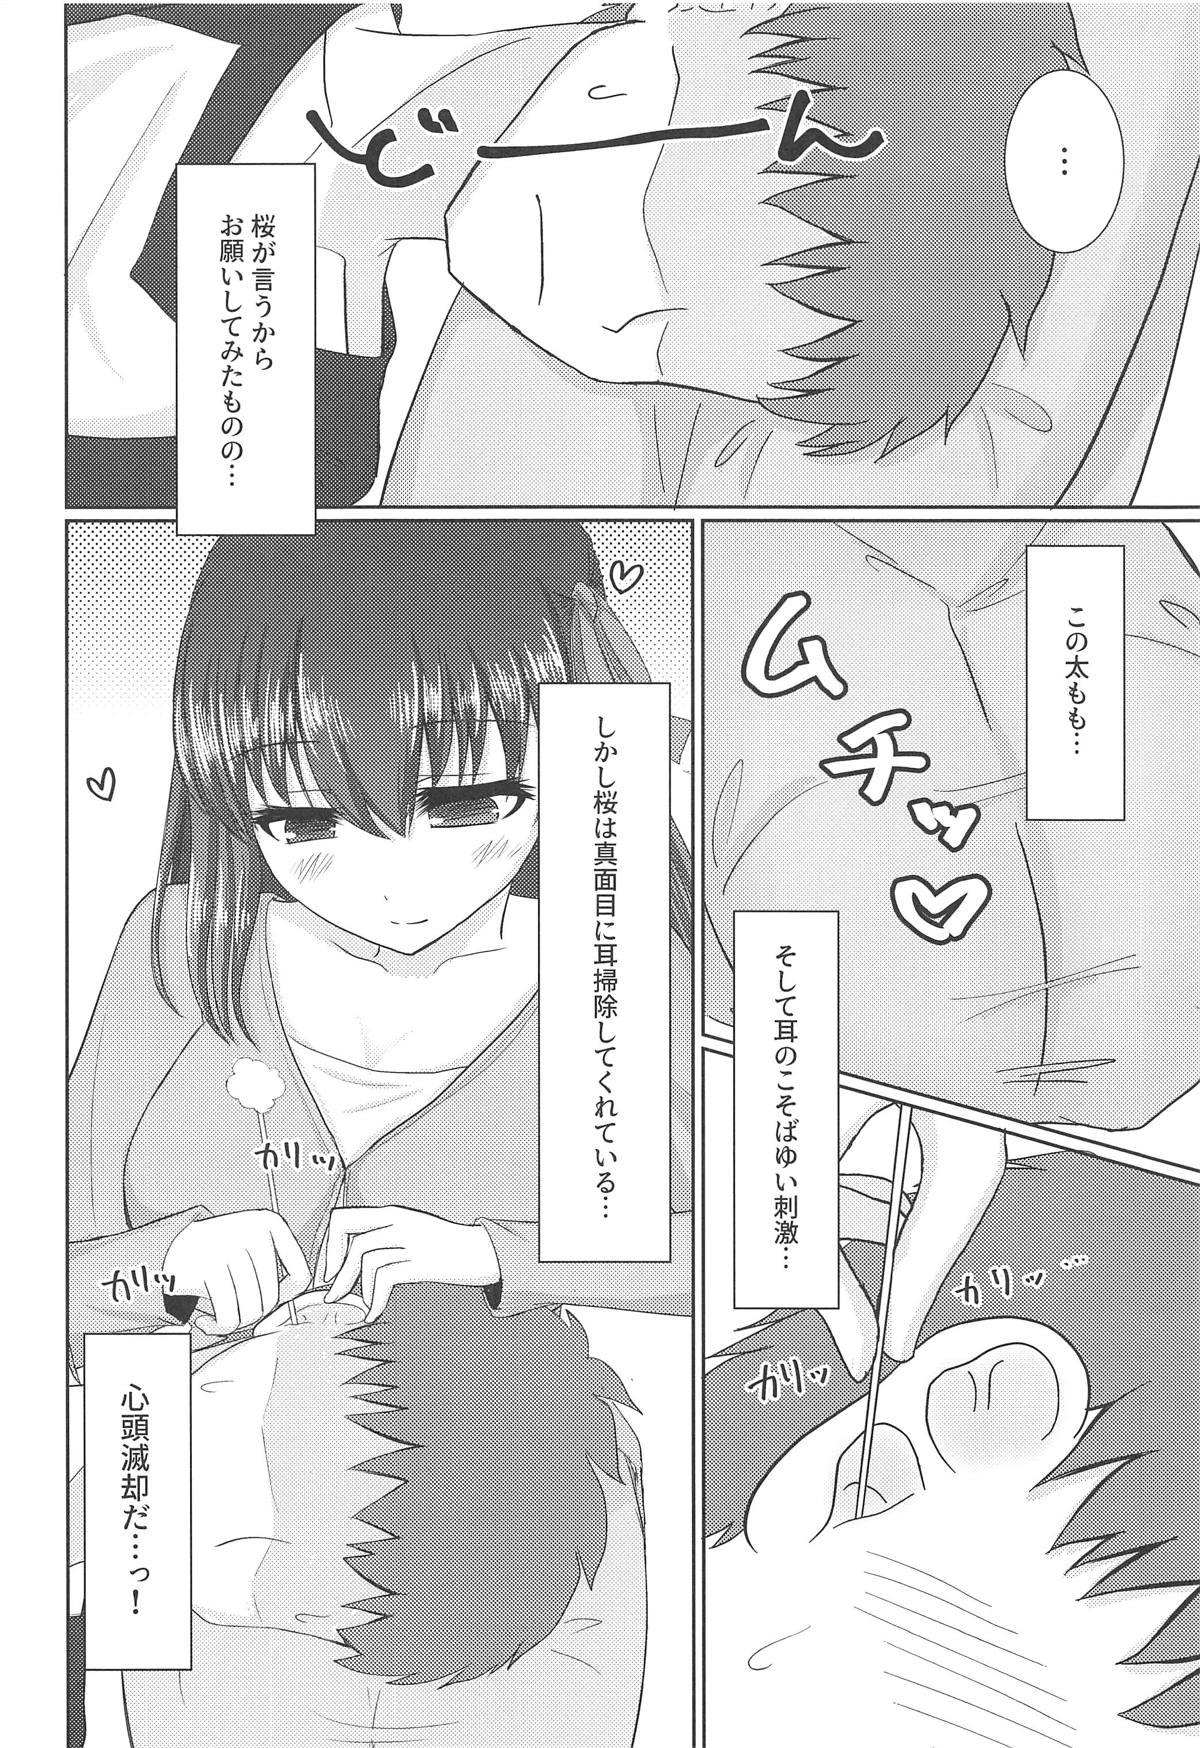 Nerd Hiza no Ue ni Sakura - Fate stay night Ecchi - Page 5